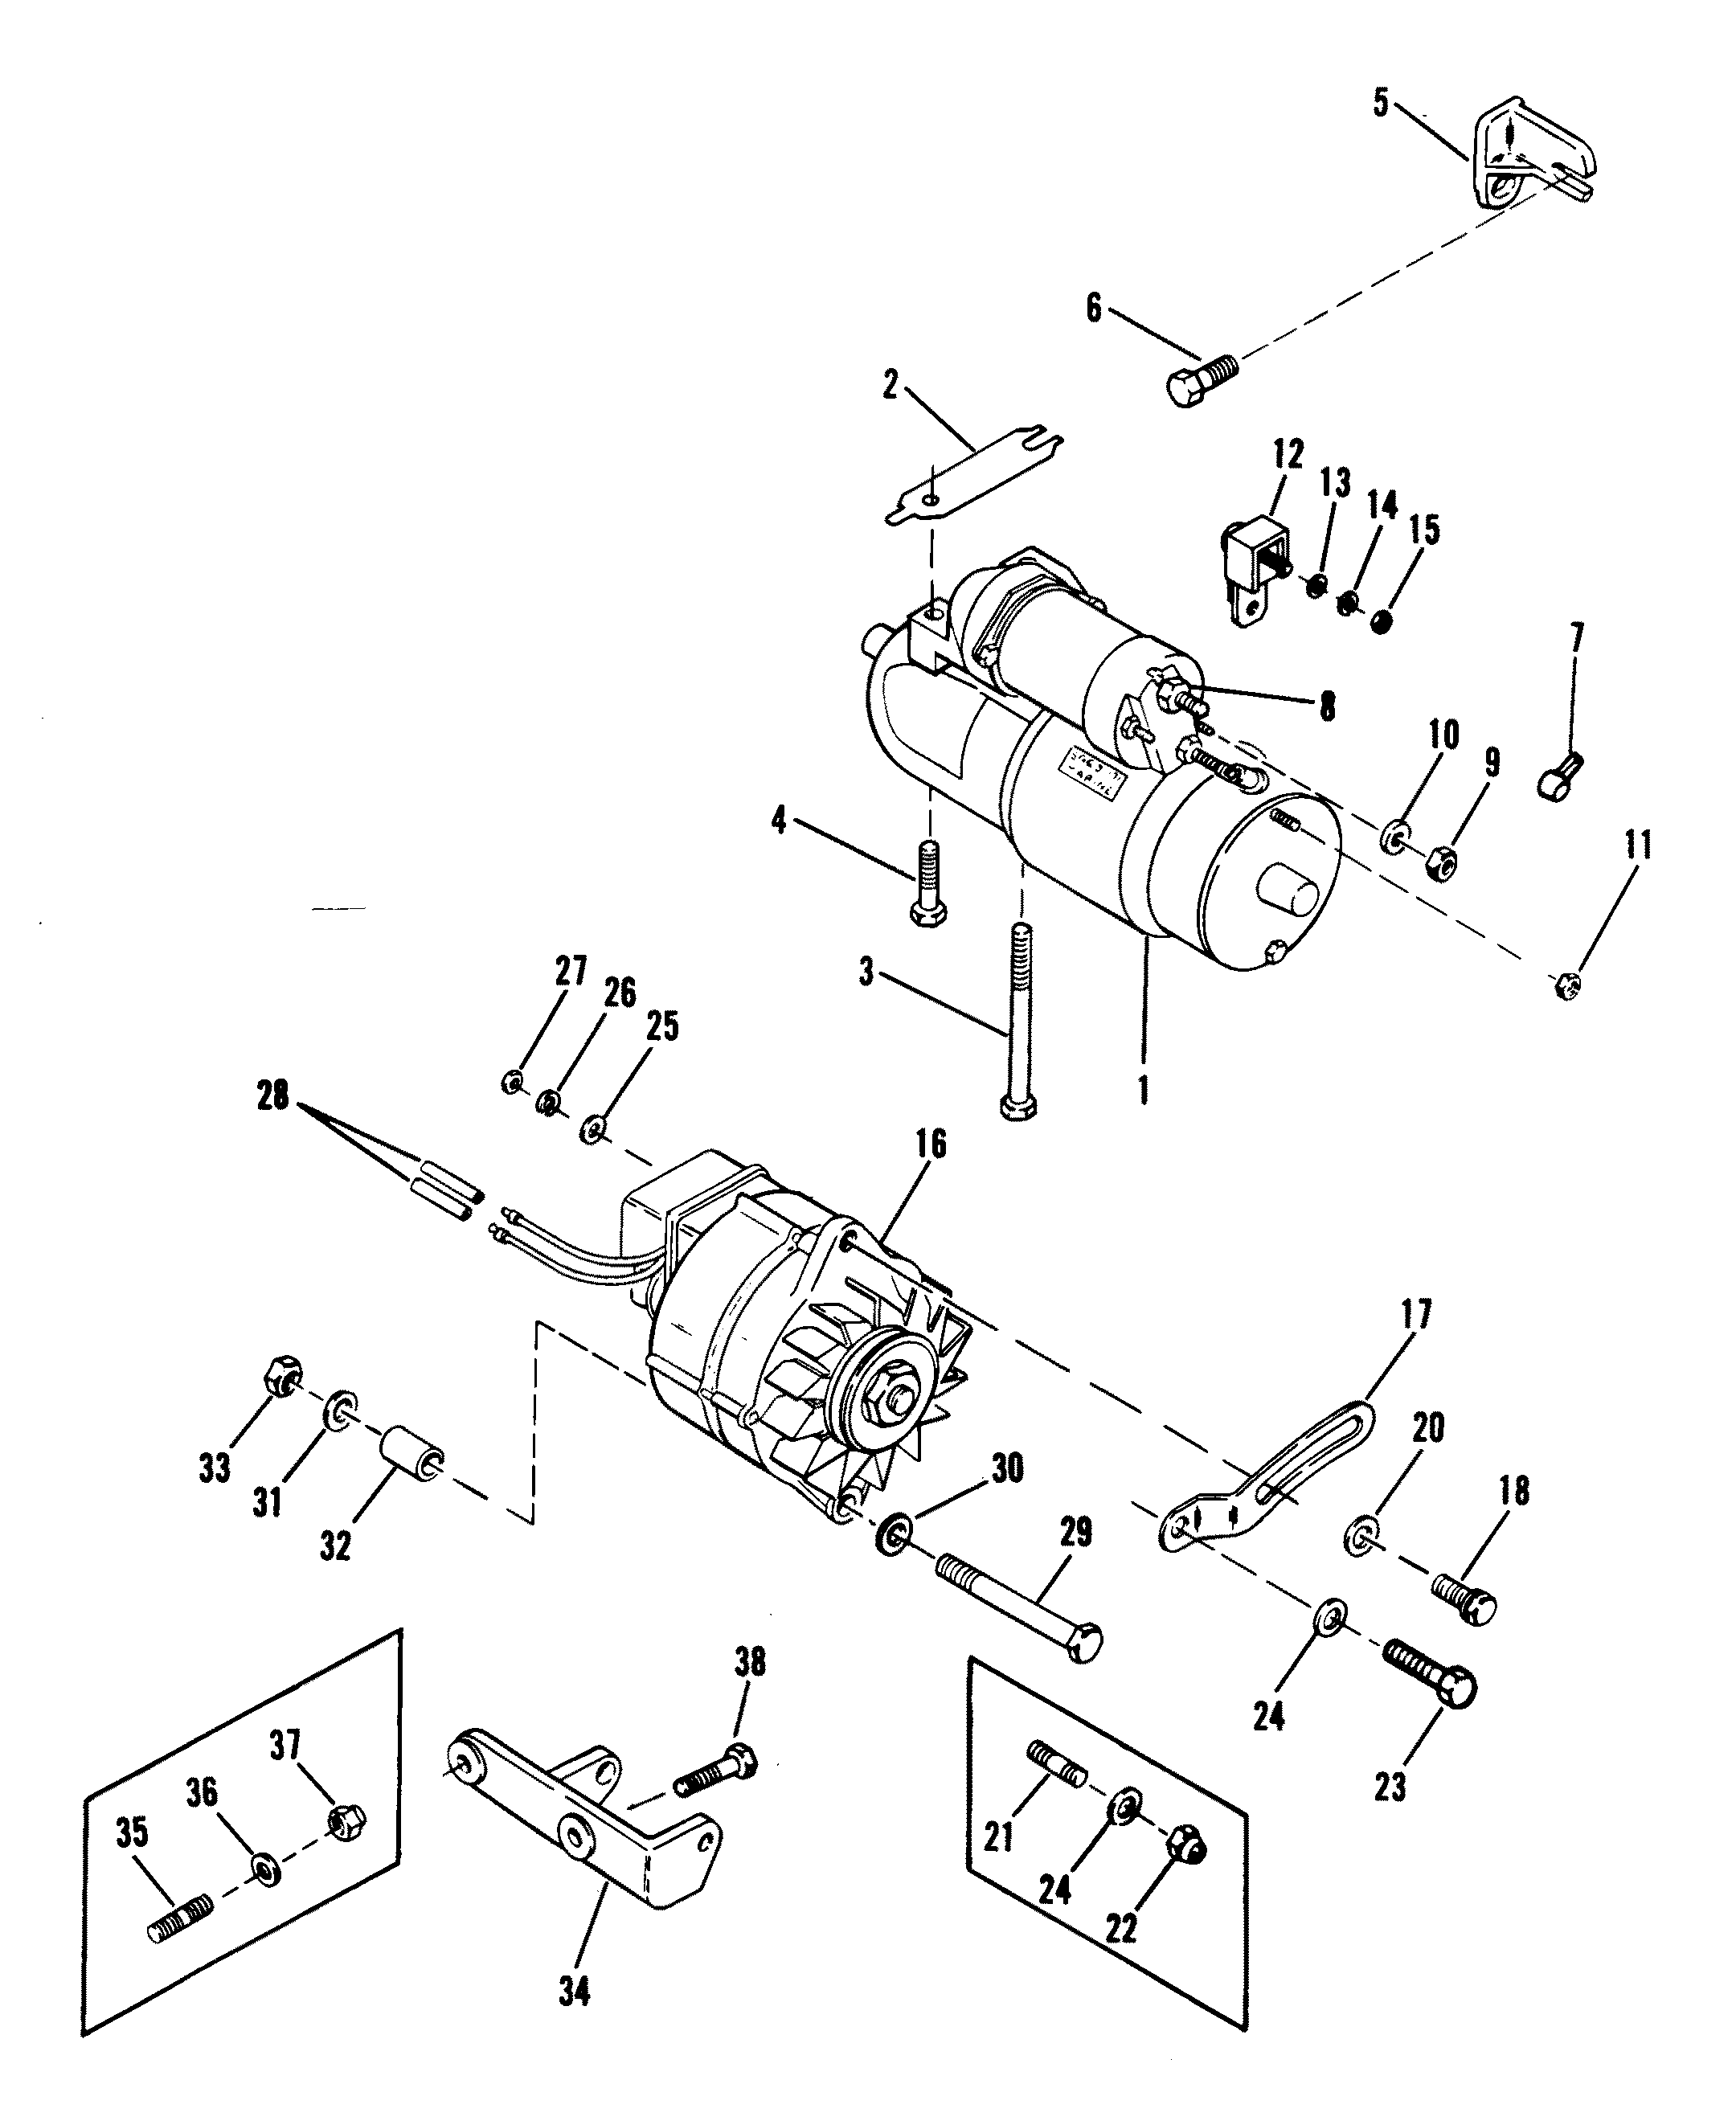 MerCruiser 2.5L GM 153 I / L4 1987-1989 Alternator (Delco-remy #1103113)  Parts